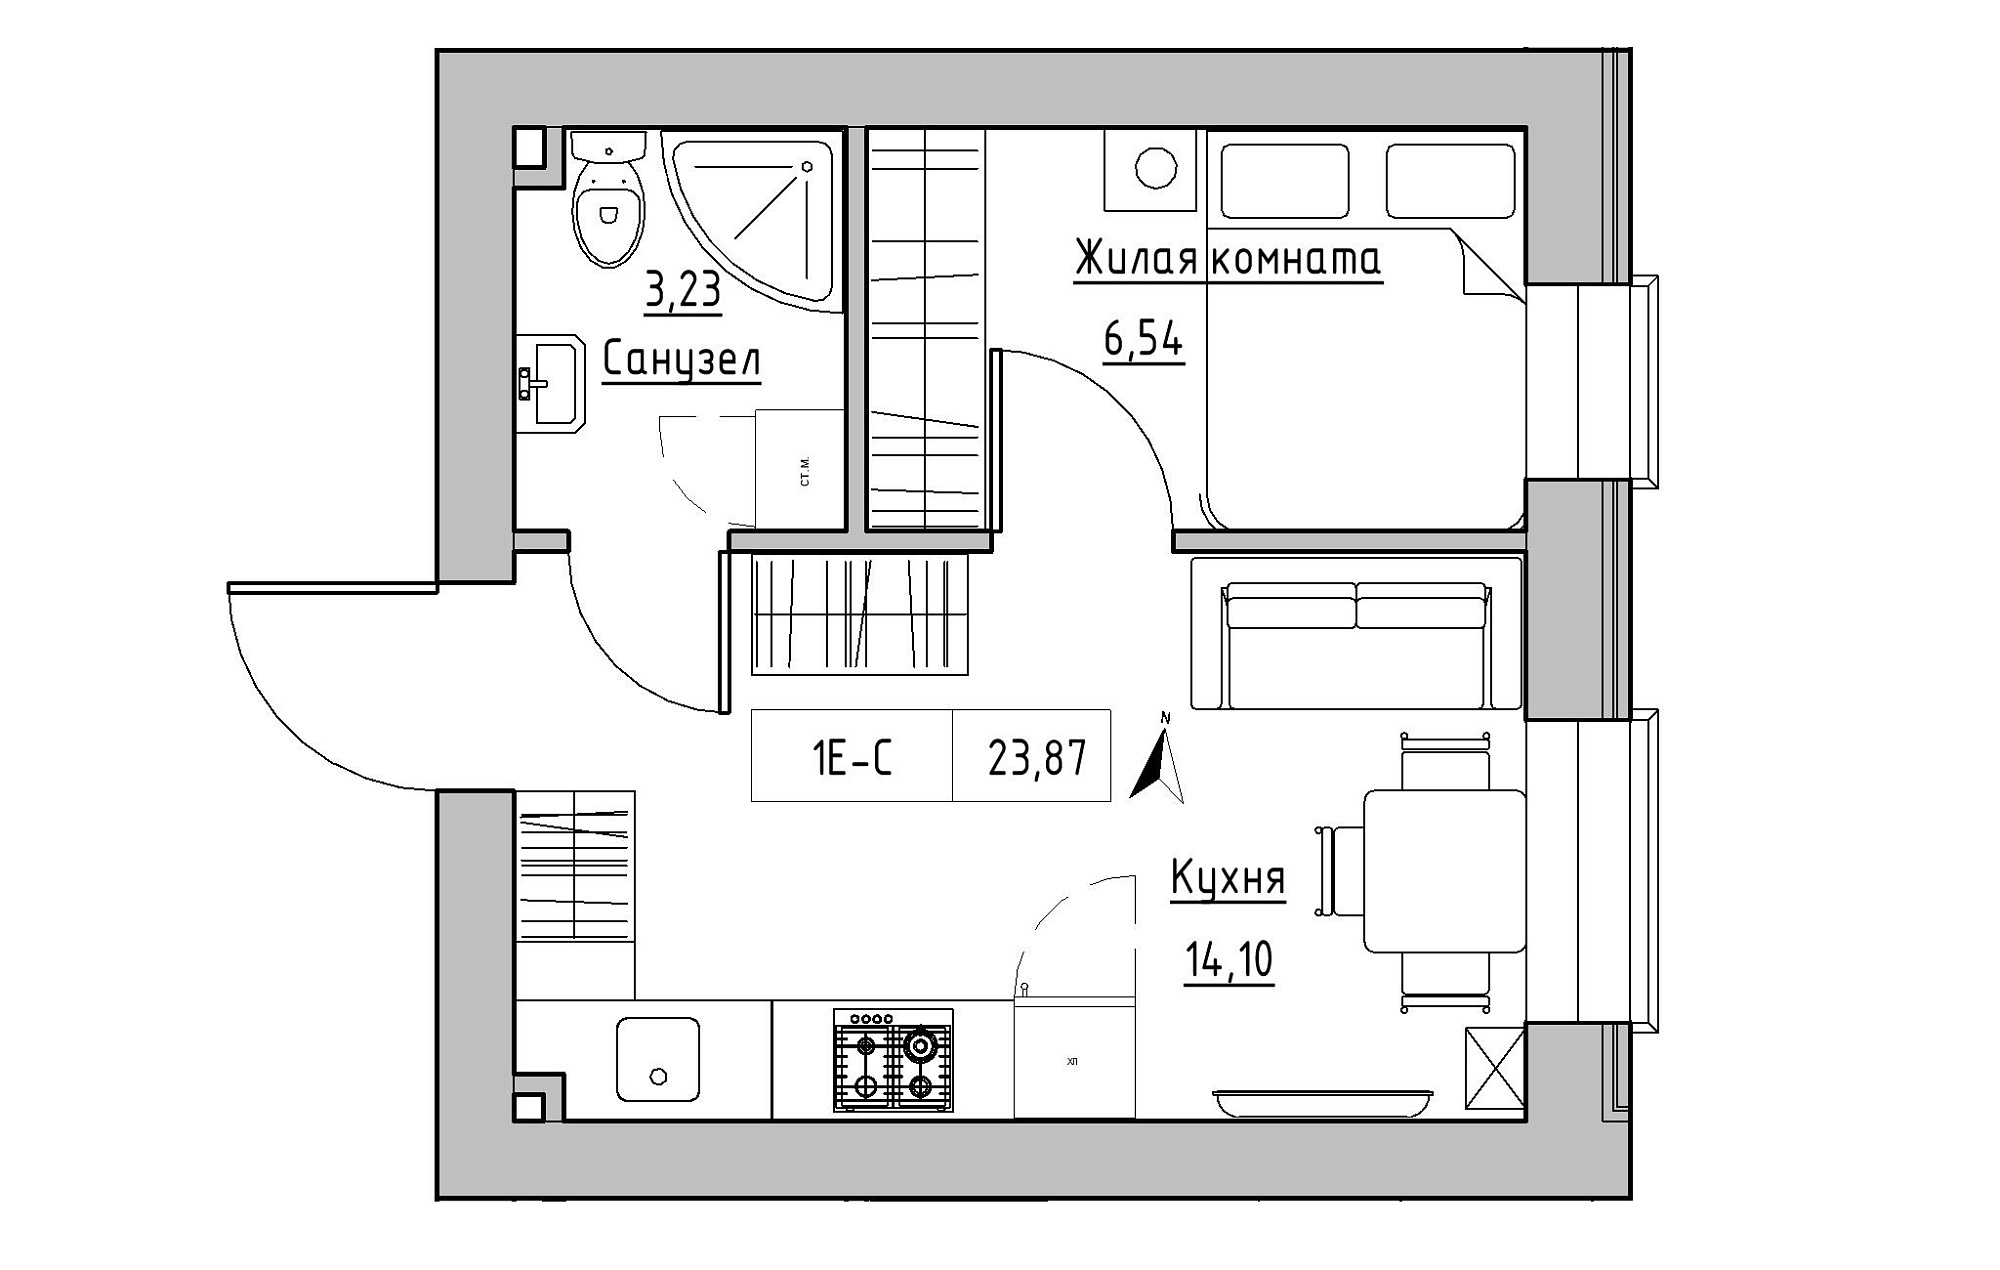 Планировка 1-к квартира площей 23.87м2, KS-019-01/0004.